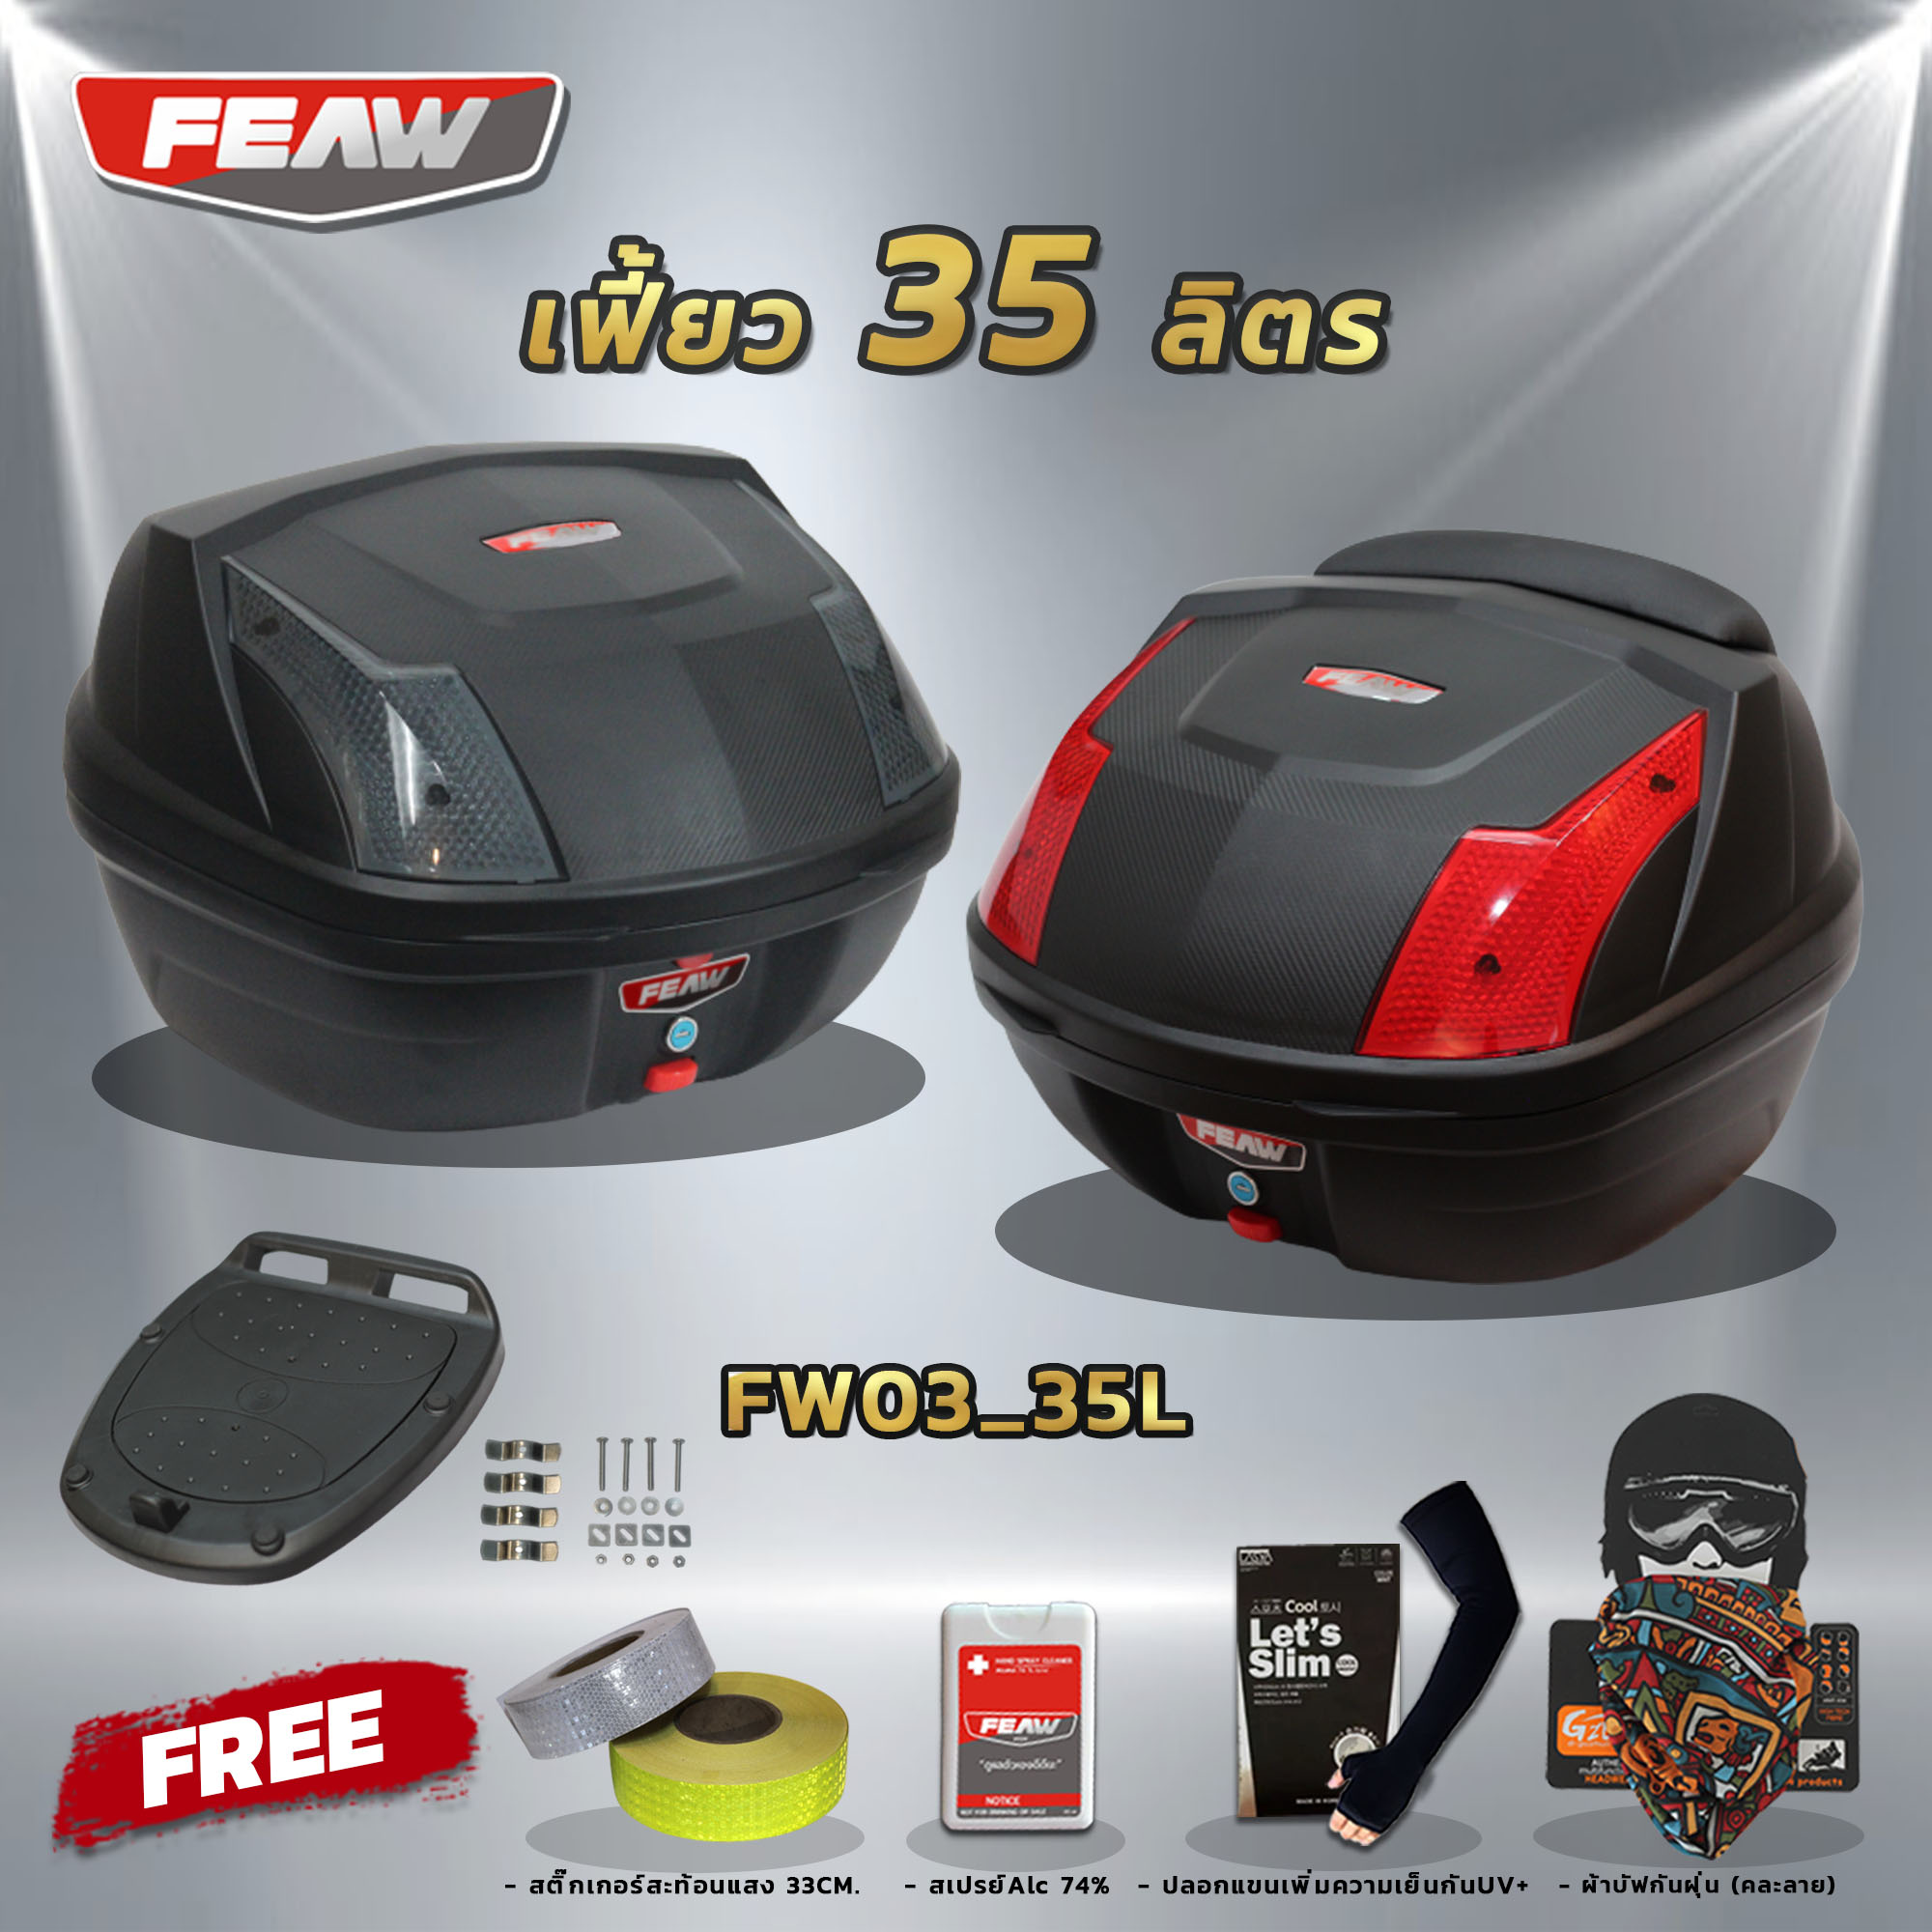 กล่องท้ายมอไซ35 ลิตรฟรีถาดรอง FEAW FW03(พลาสติคอย่างหนา)ถูก สวย ดี มีประกันศูนย์ กล่องหลังมอไซ กล่องFEAW กล่องเฟี้ยว กระเป๋าฟรีของแถม 4 รายการ+